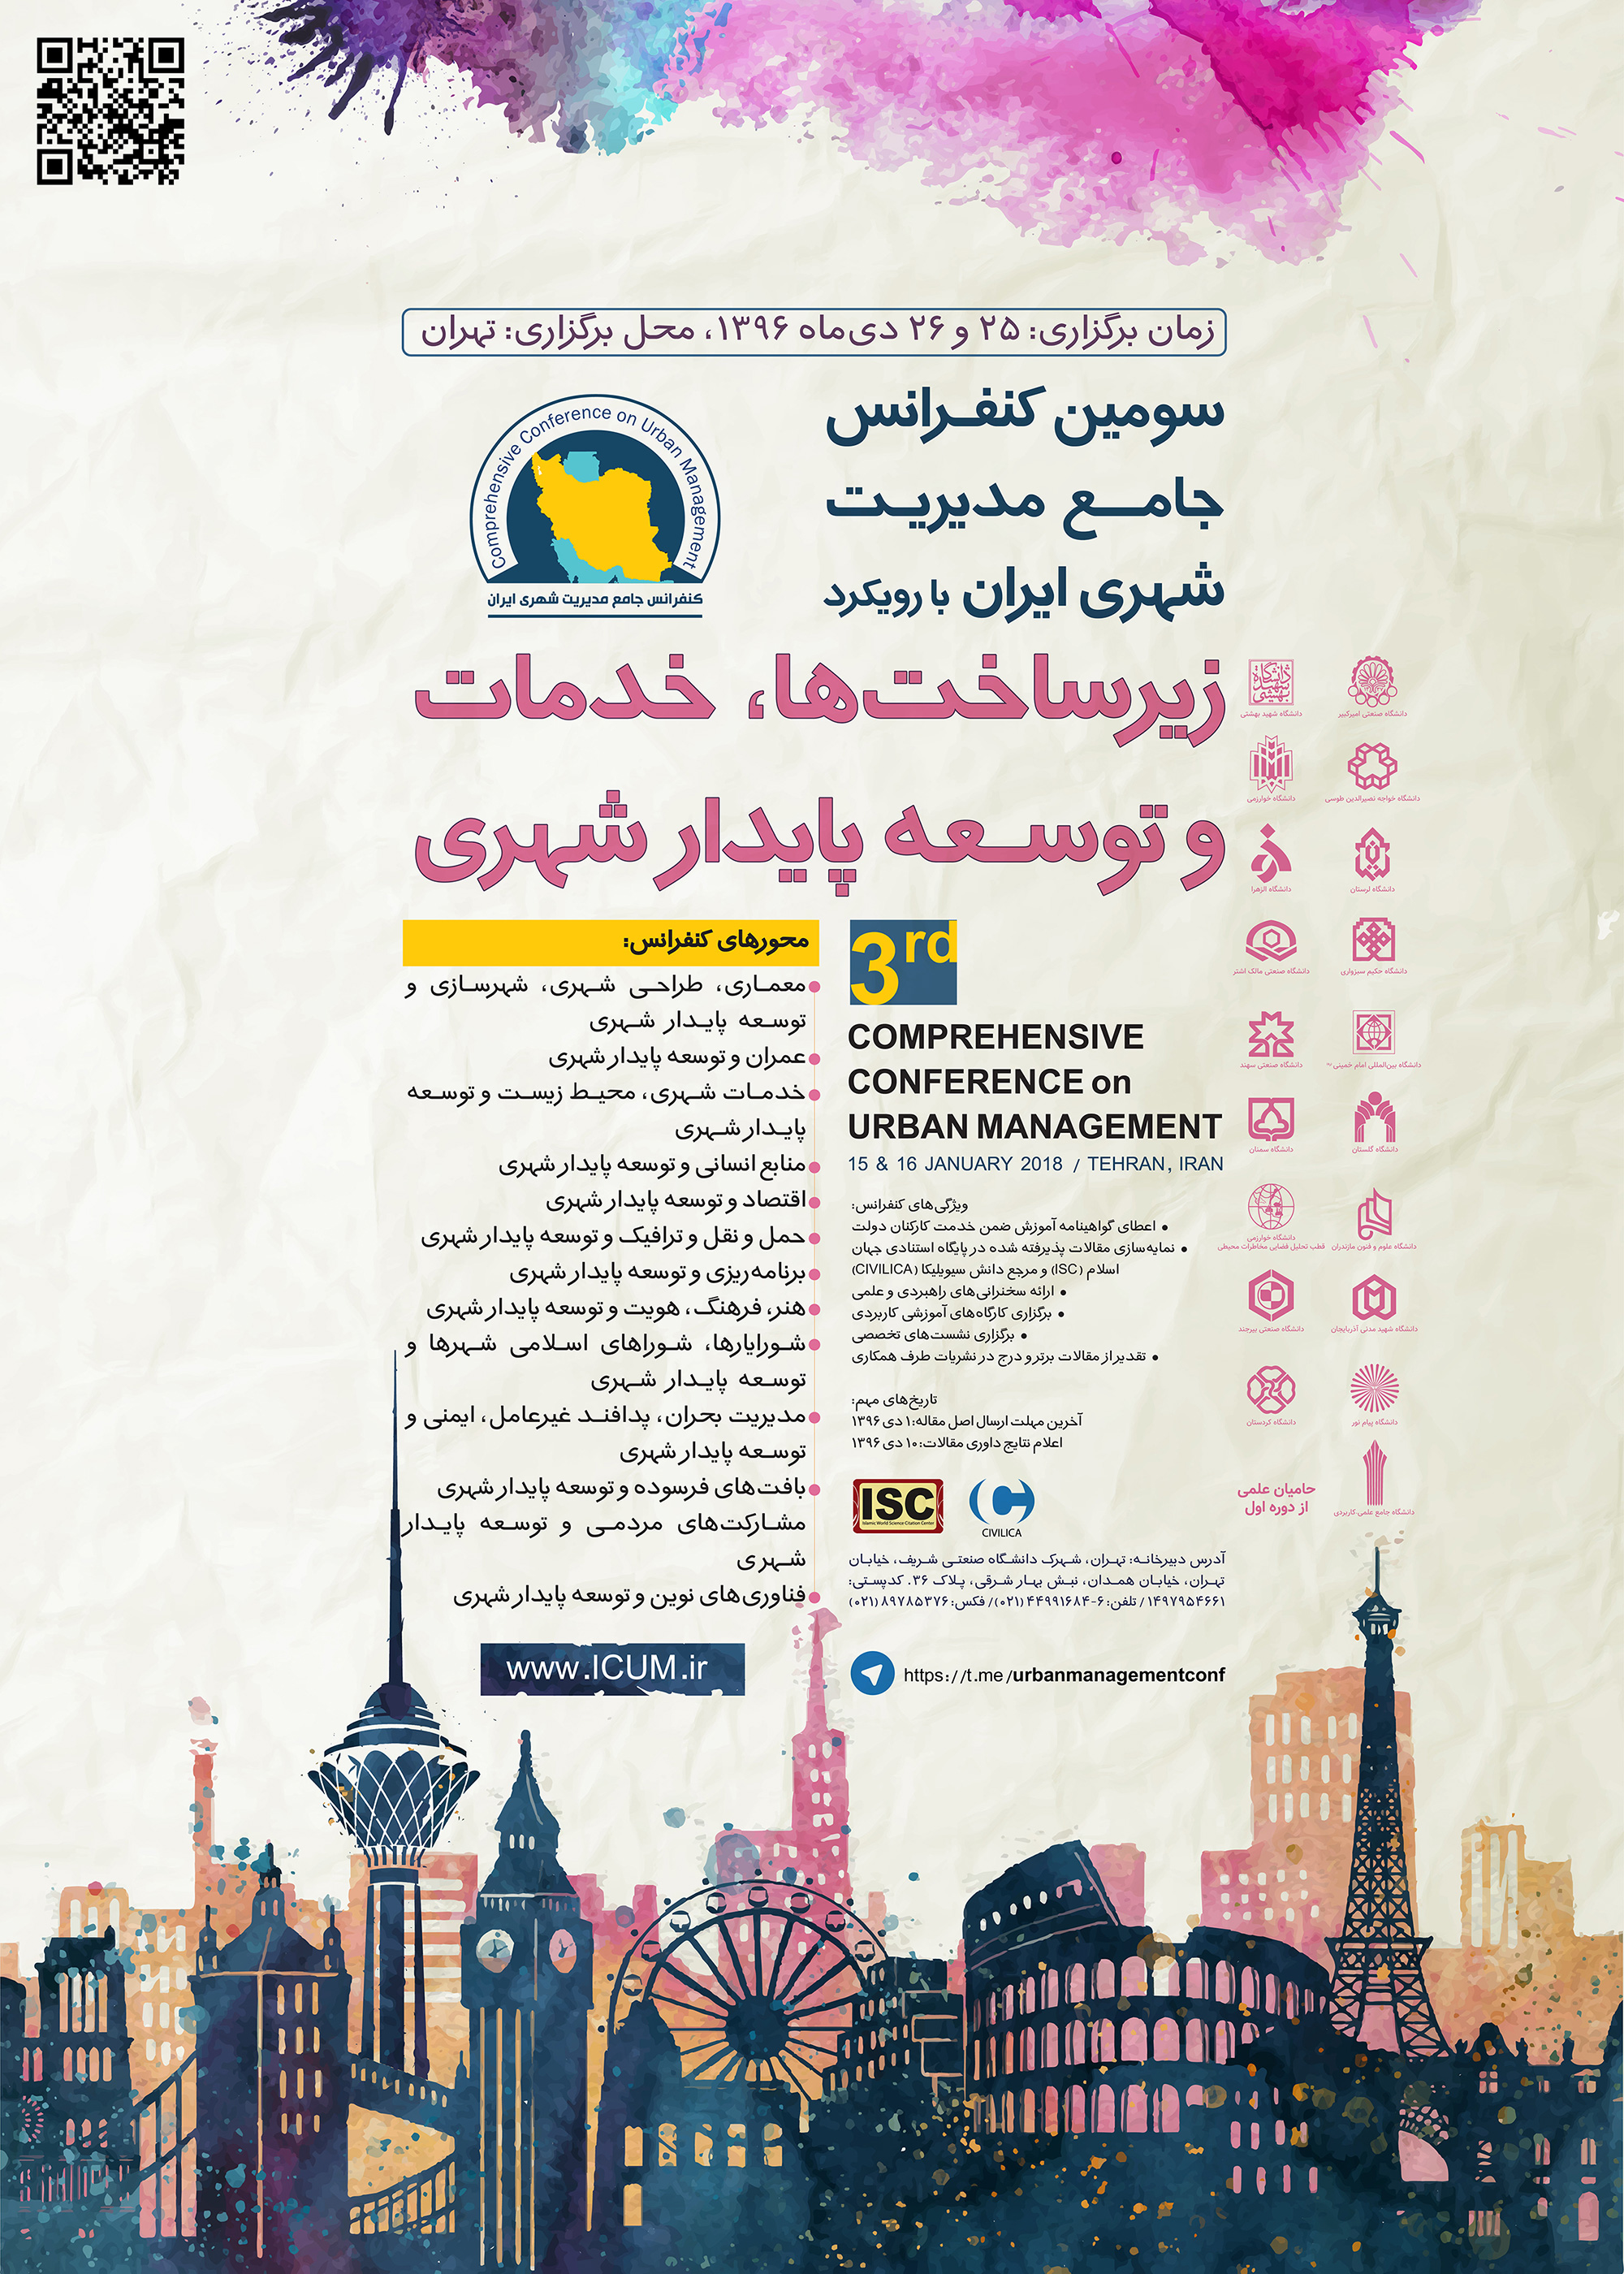 سومین کنفرانس جامع مدیریت شهری ایران با رویکرد زیرساخت ها، خدمات و توسعه پایدار شهری